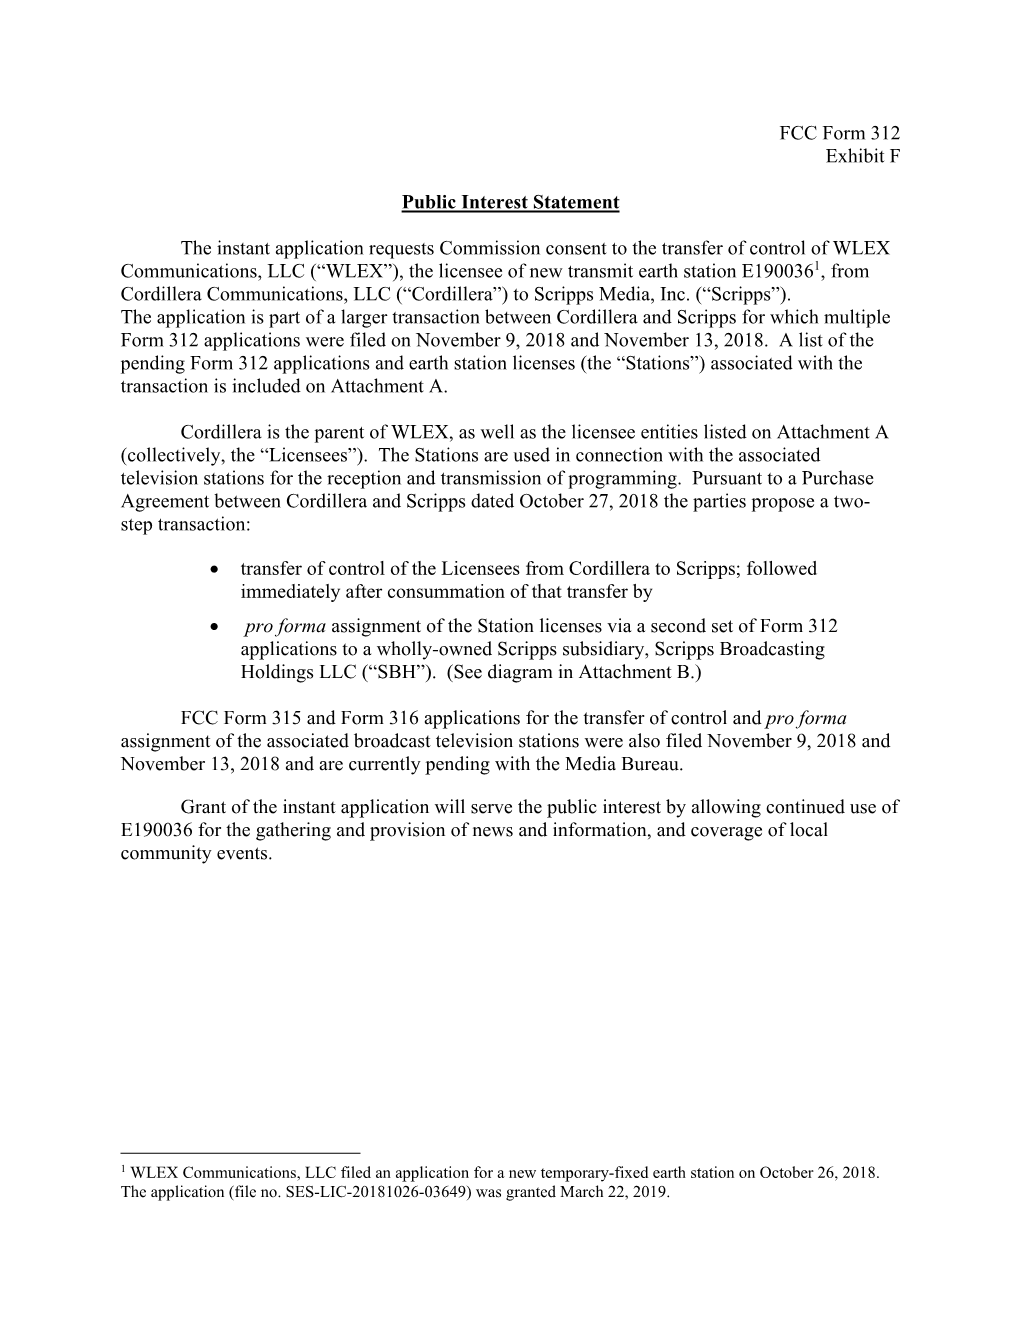 FCC Form 312 Exhibit F Public Interest Statement the Instant